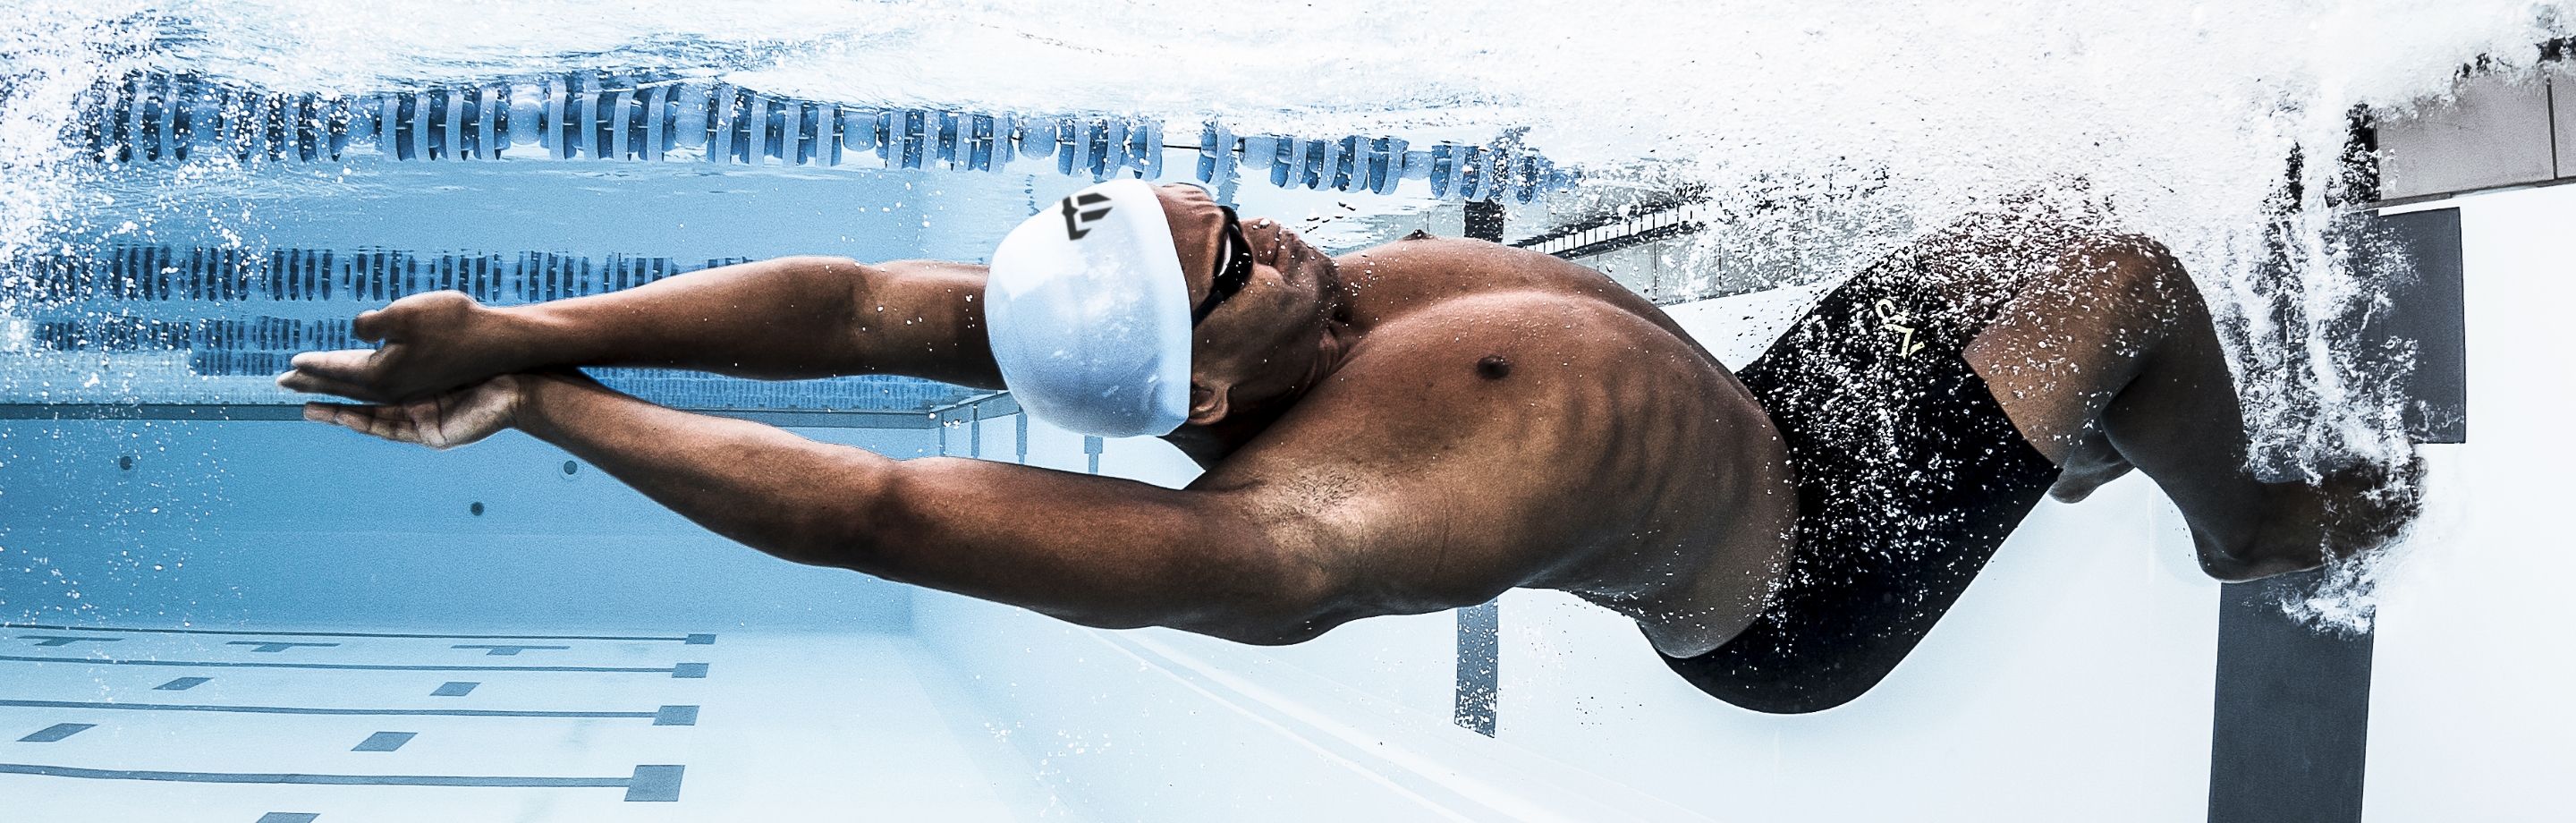  Phelps - costumi da bagno e attrezzature dalla mano leggendaria